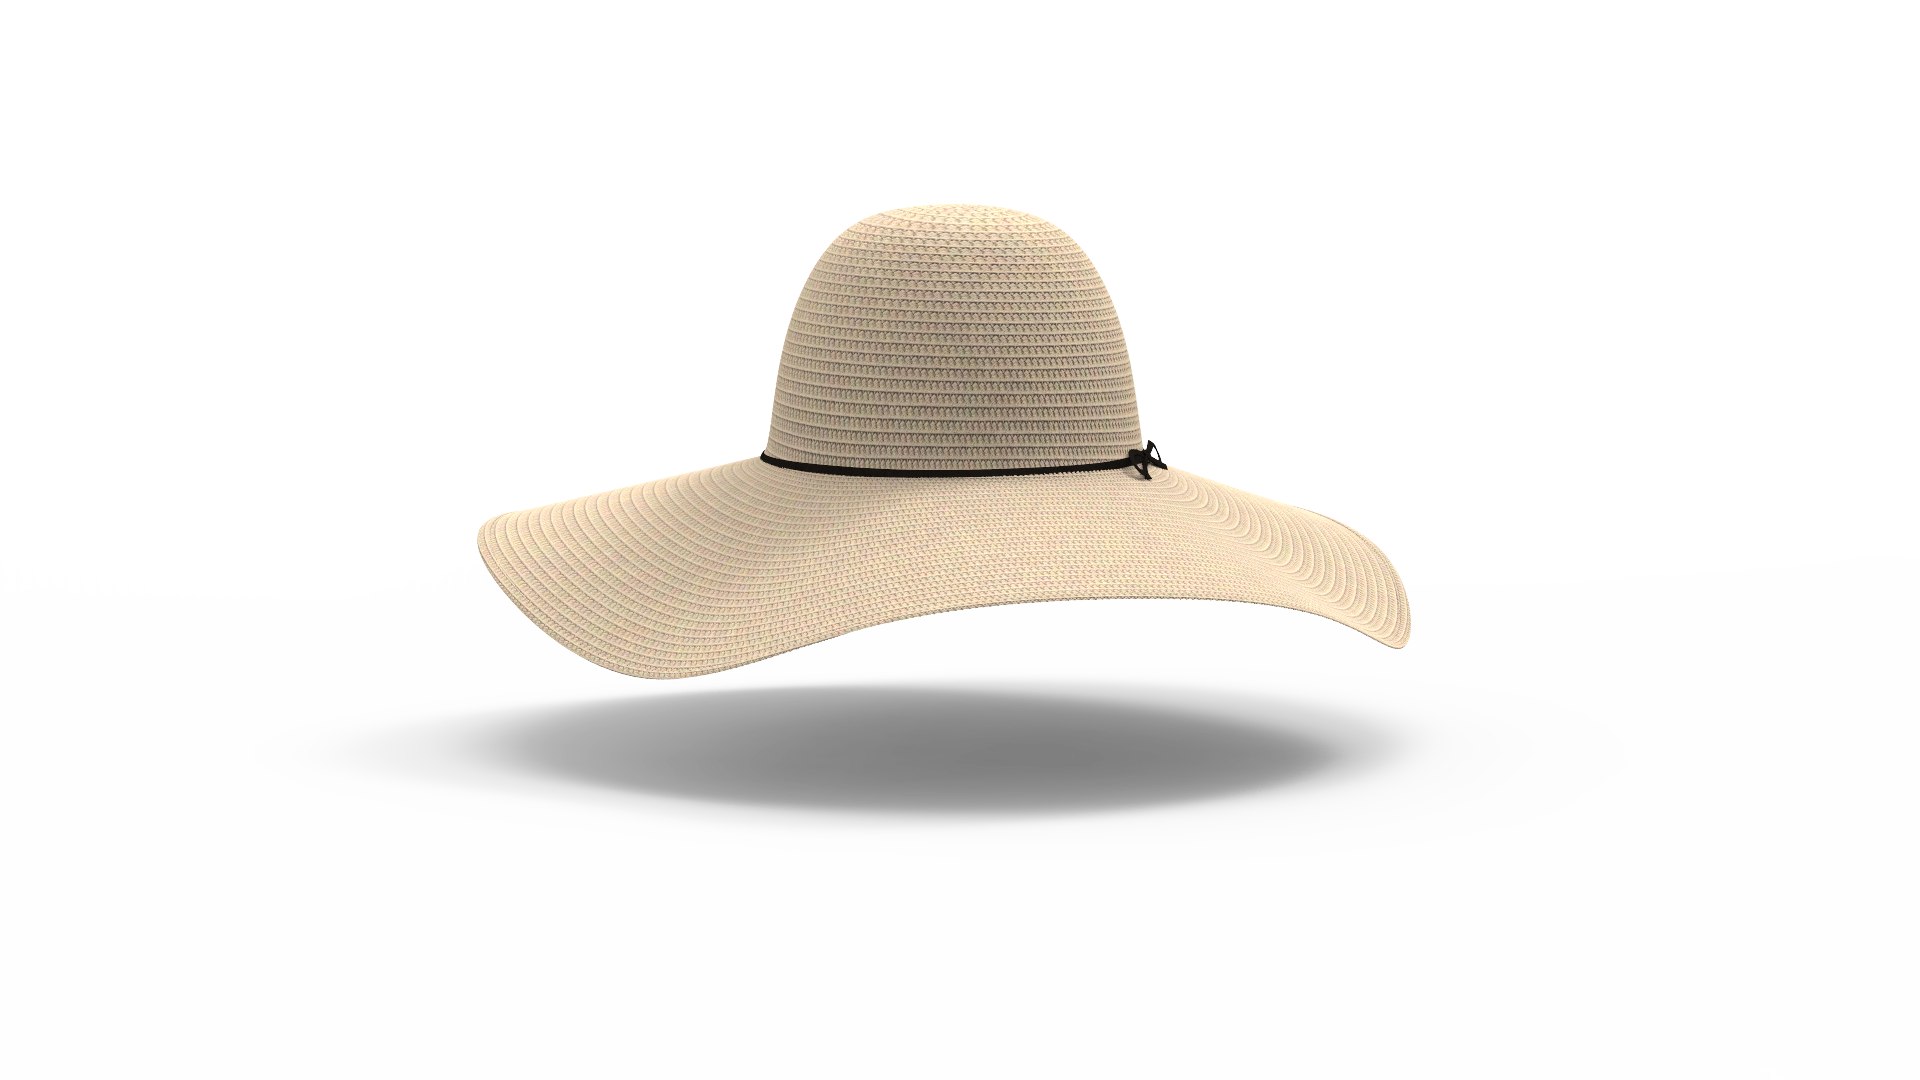 Brim Hat 3D Model - TurboSquid 1742143